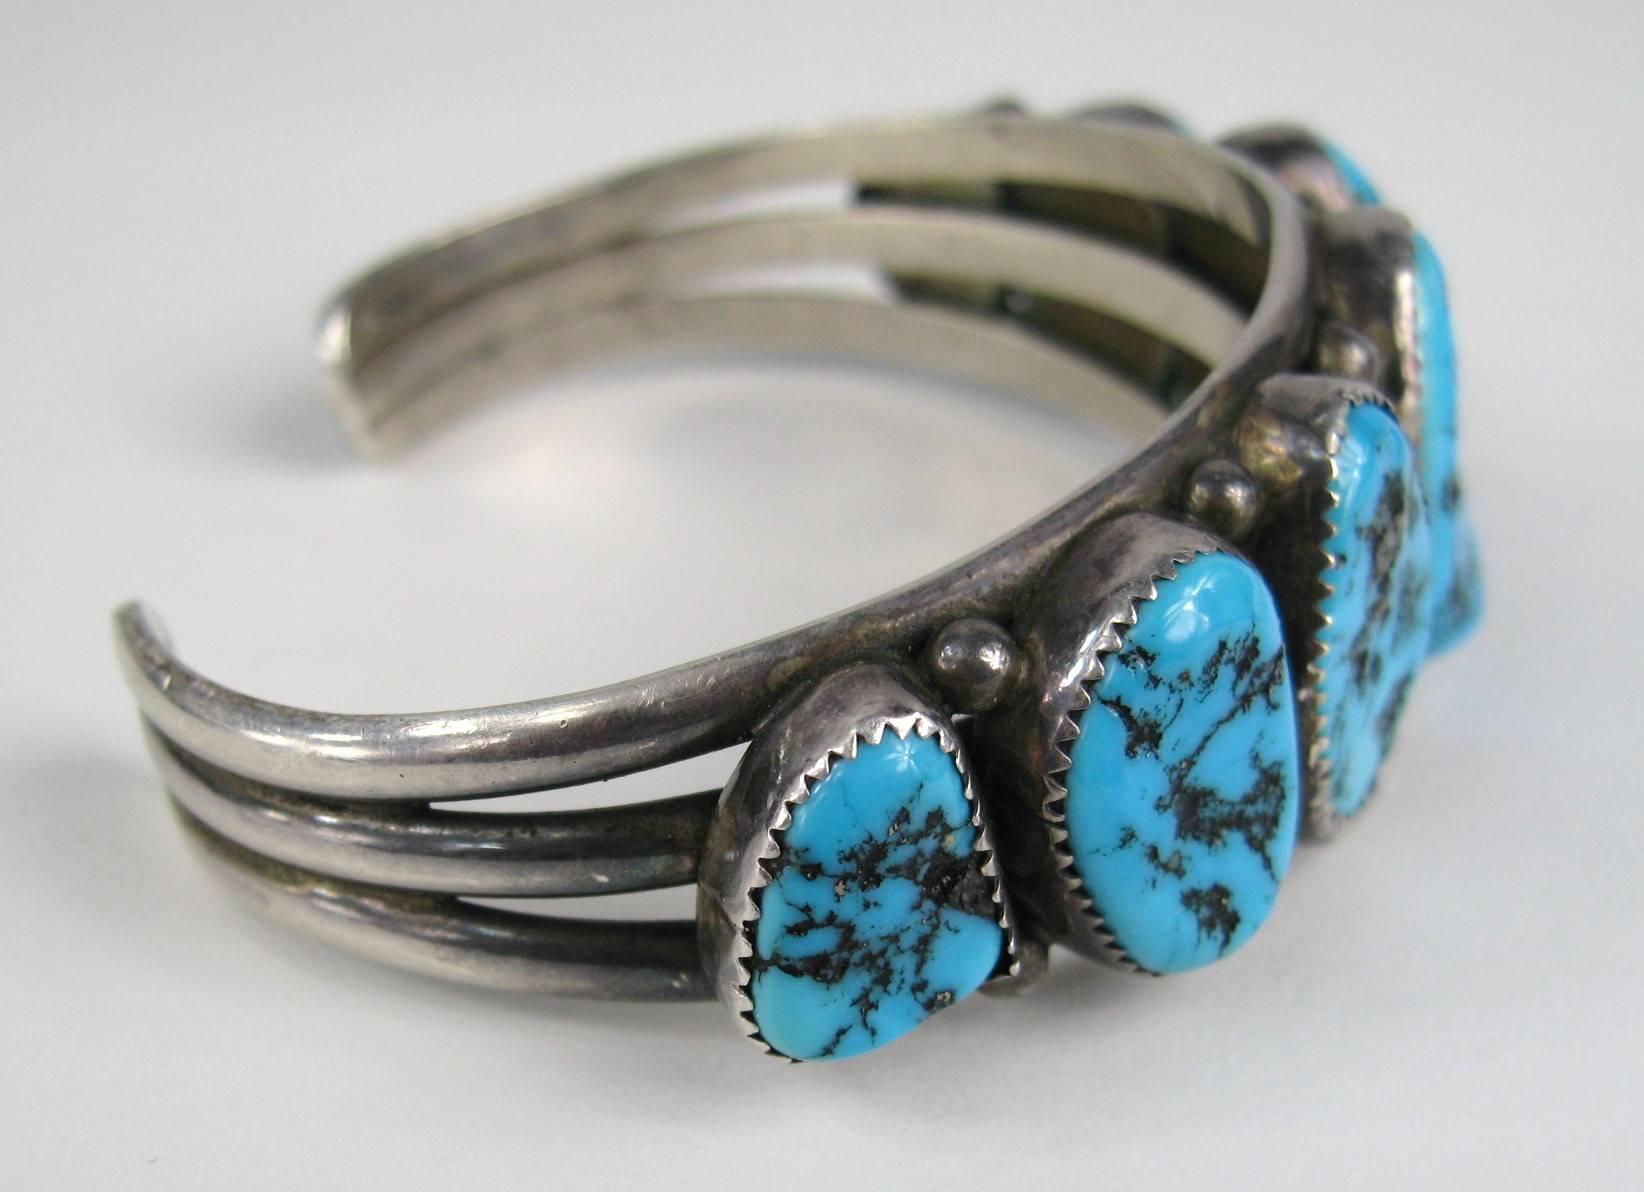 Handgefertigte Sleeping Beauty Navajo Sterling Silber Armband. 3 Ringe macht das Armband mit 7 Lünette gesetzt Türkis Steine in einer abgestuften Art und Weise gesetzt. Dies kann sowohl von einem Mann oder einer Frau getragen werden Messen 1 Zoll an